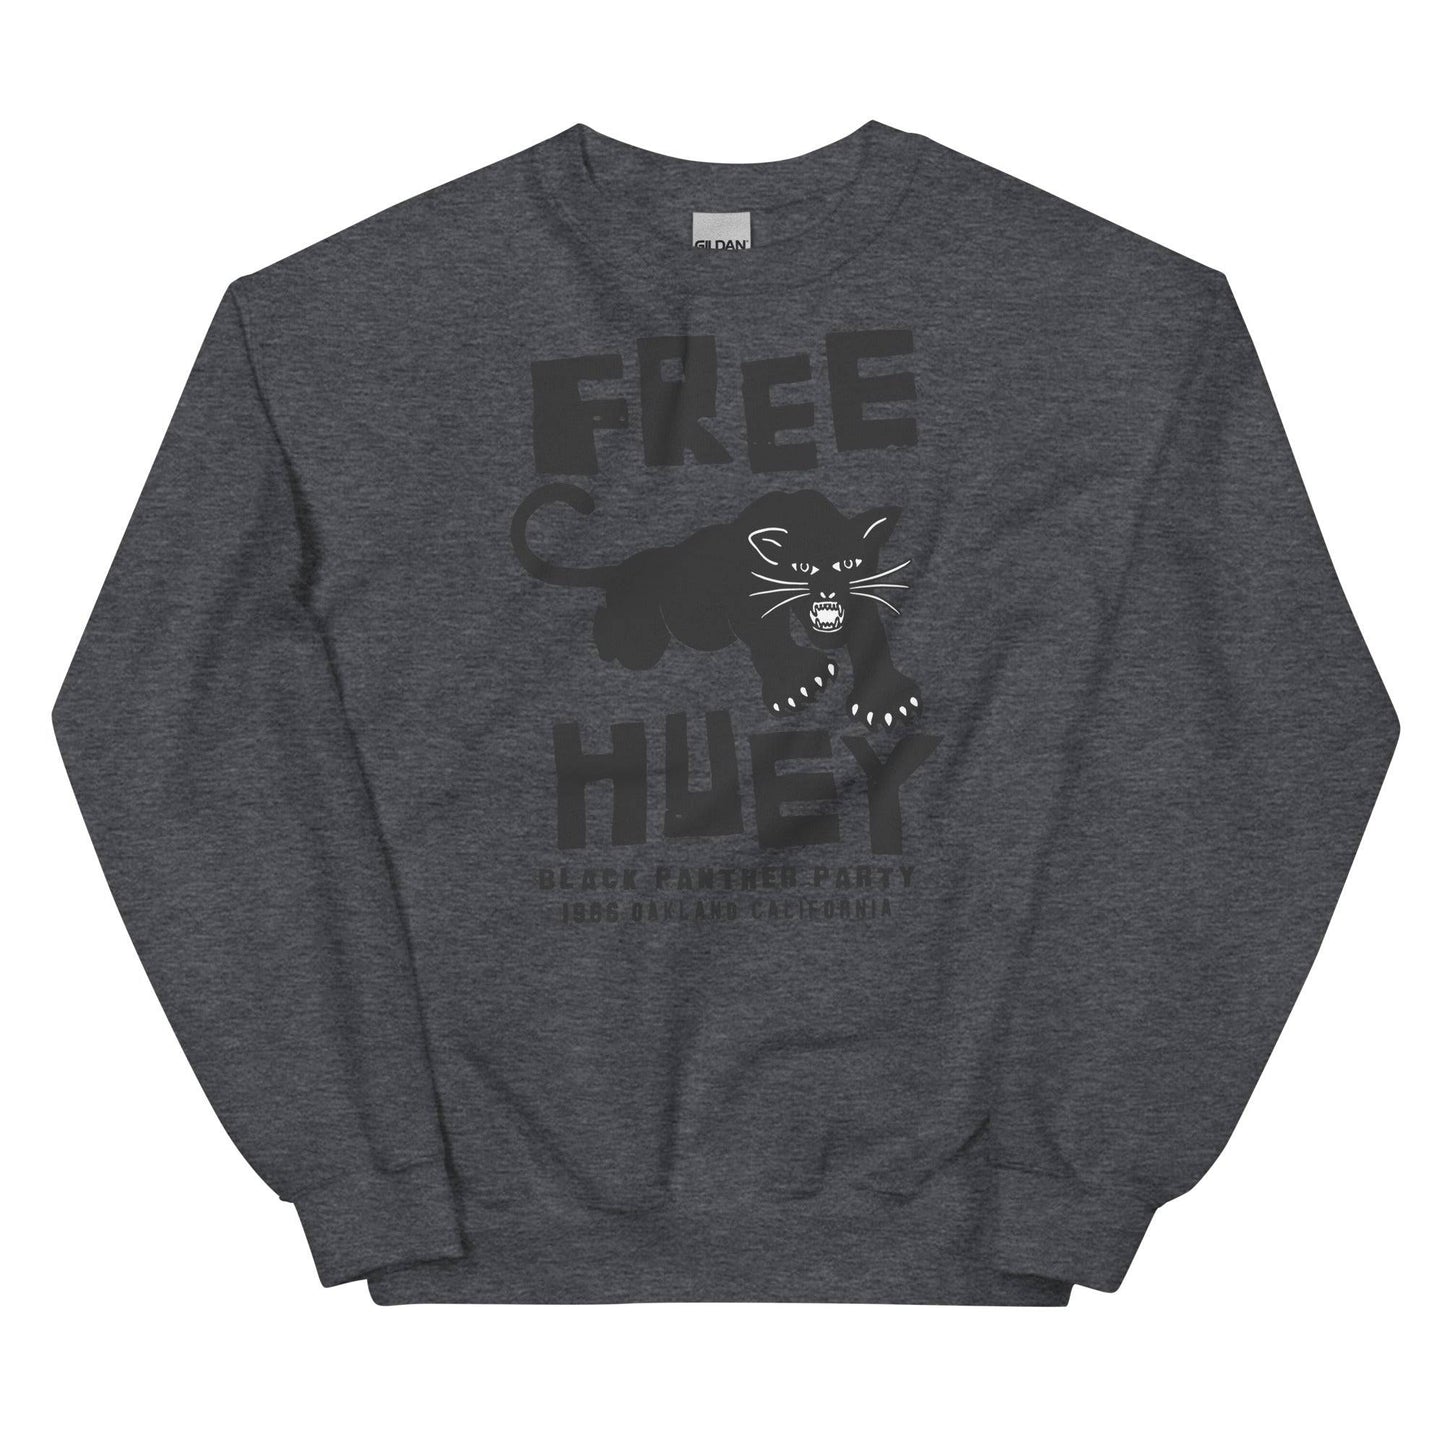 Free Huey BPP Staple Unisex Sweatshirt